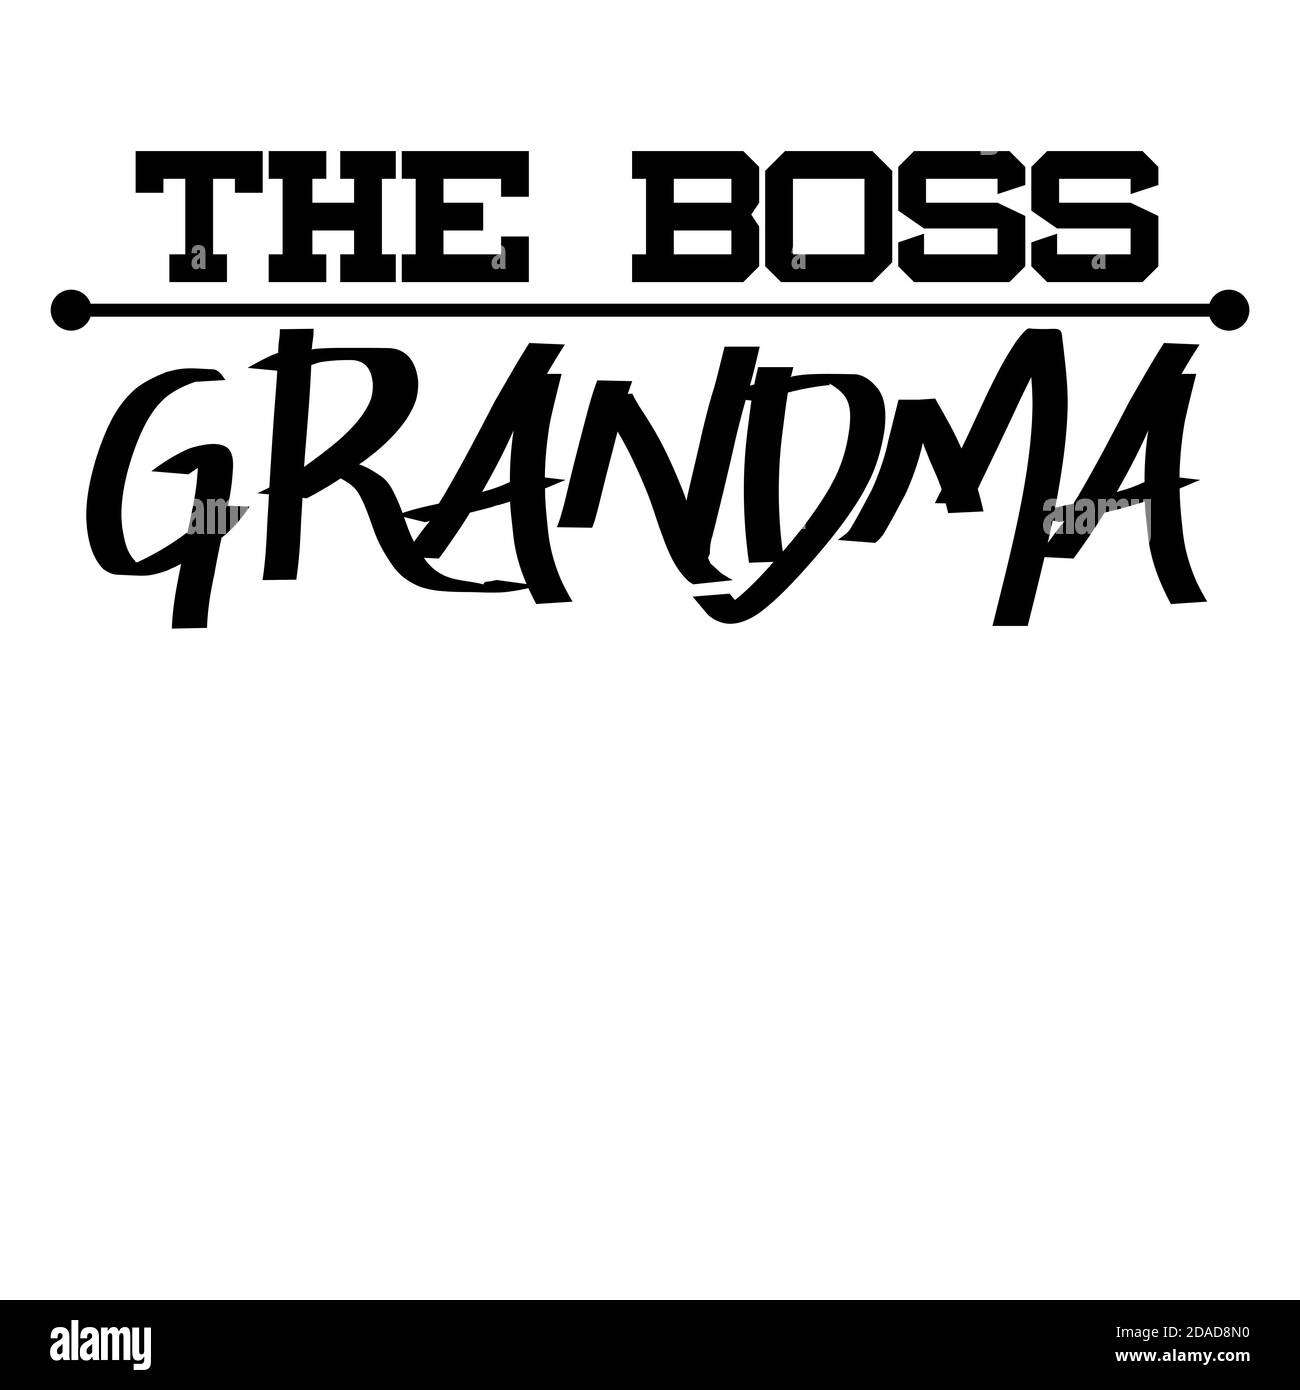 Das Boss Oma Text Design in Jet Black Farben. Wir alle lieben unsere Oma und sie sind sehr wertvoll in unserem Leben. So kann dies als Geschenk usw. gegeben werden Stockfoto